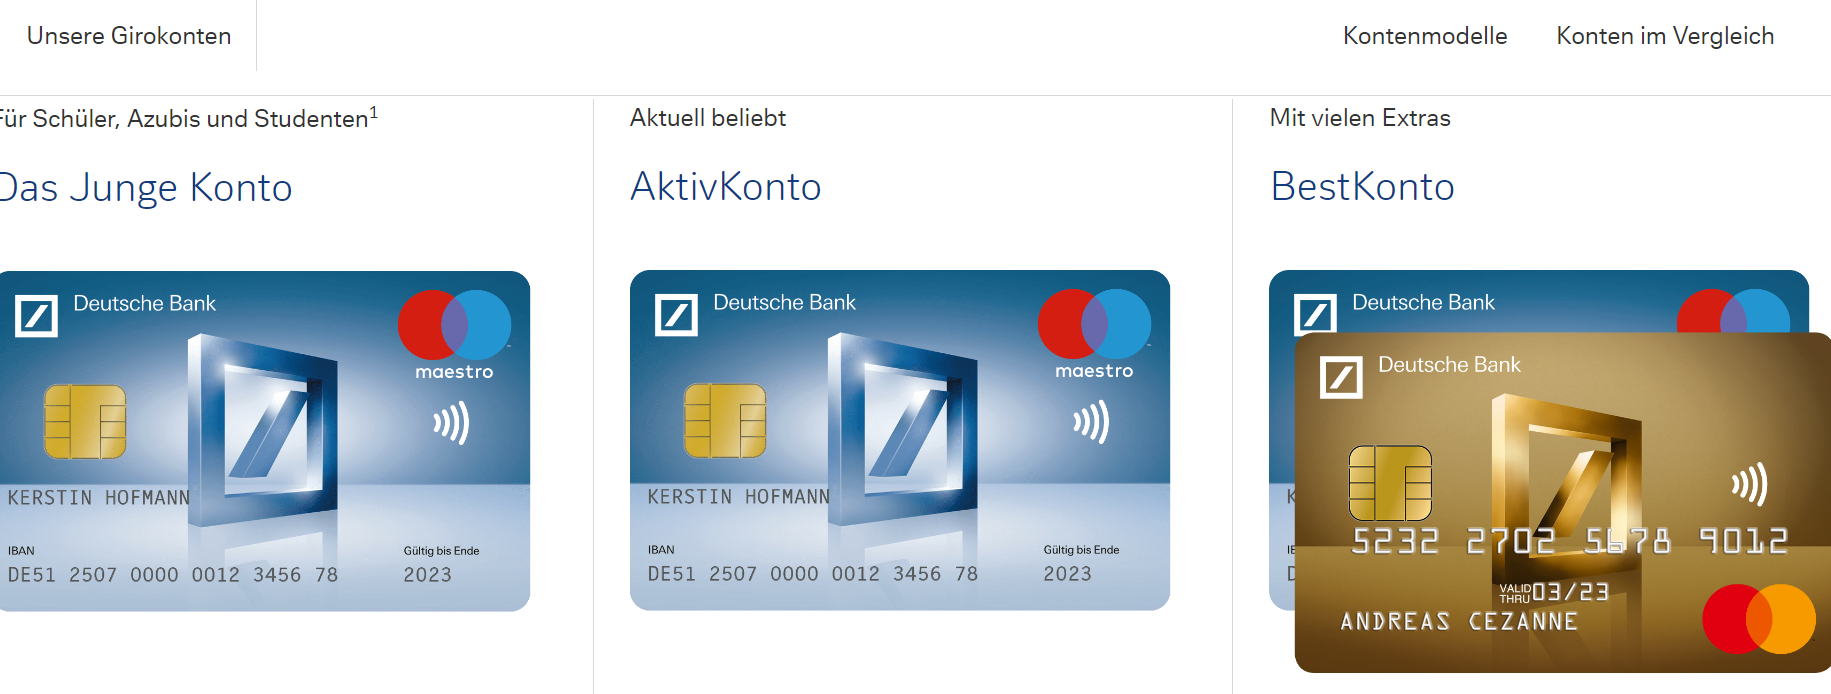 Deutsche Bank_homepage